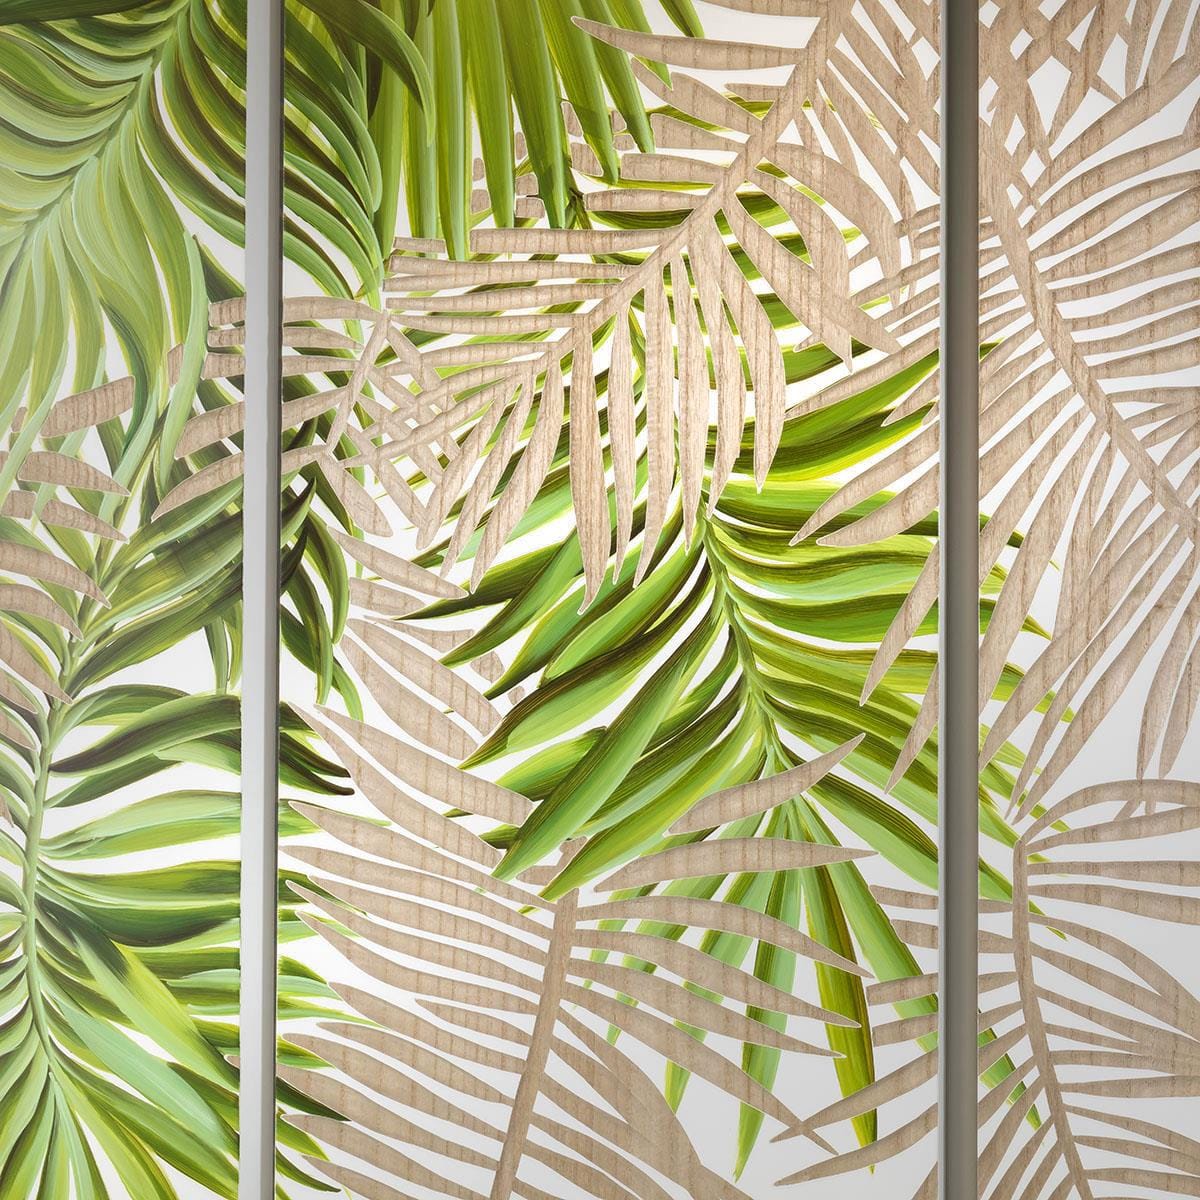 Quatropi Large 1.2mx1.2m Wood Carved Palm Leaf Panel Wall Art - Jungle